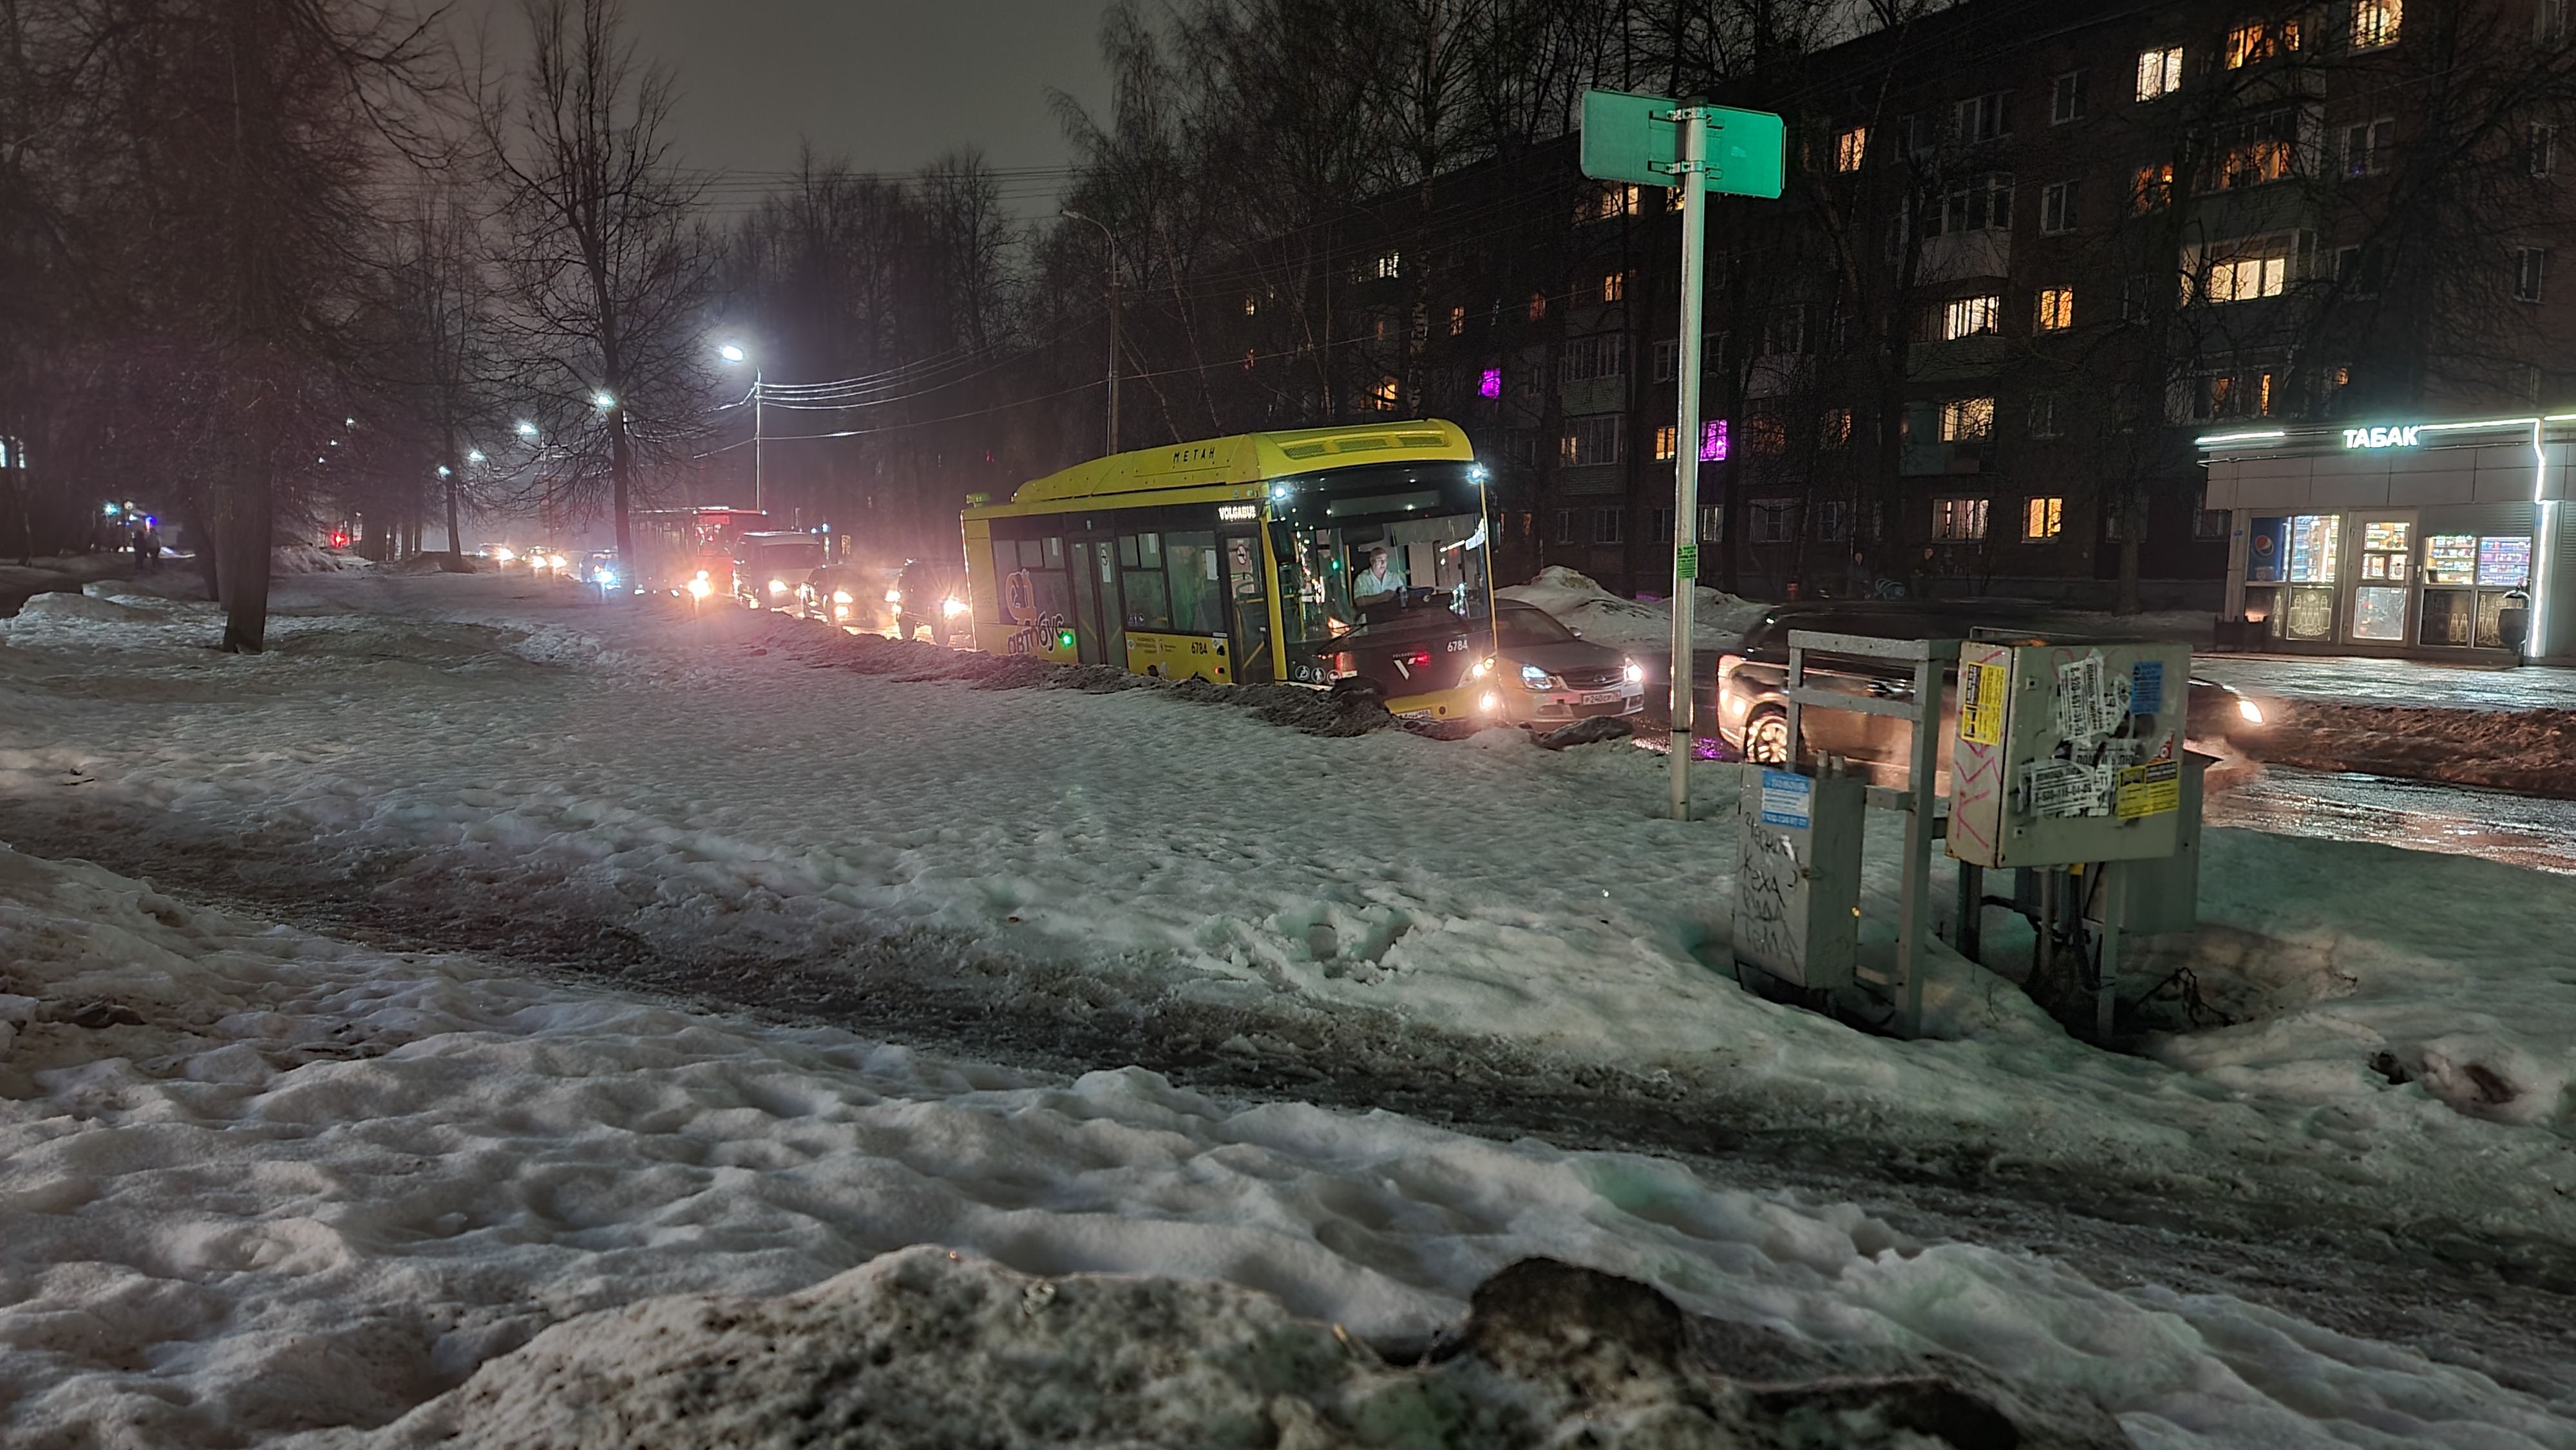 "Обряд посвящения": в Ярославле новый автобус застрял в старой яме 